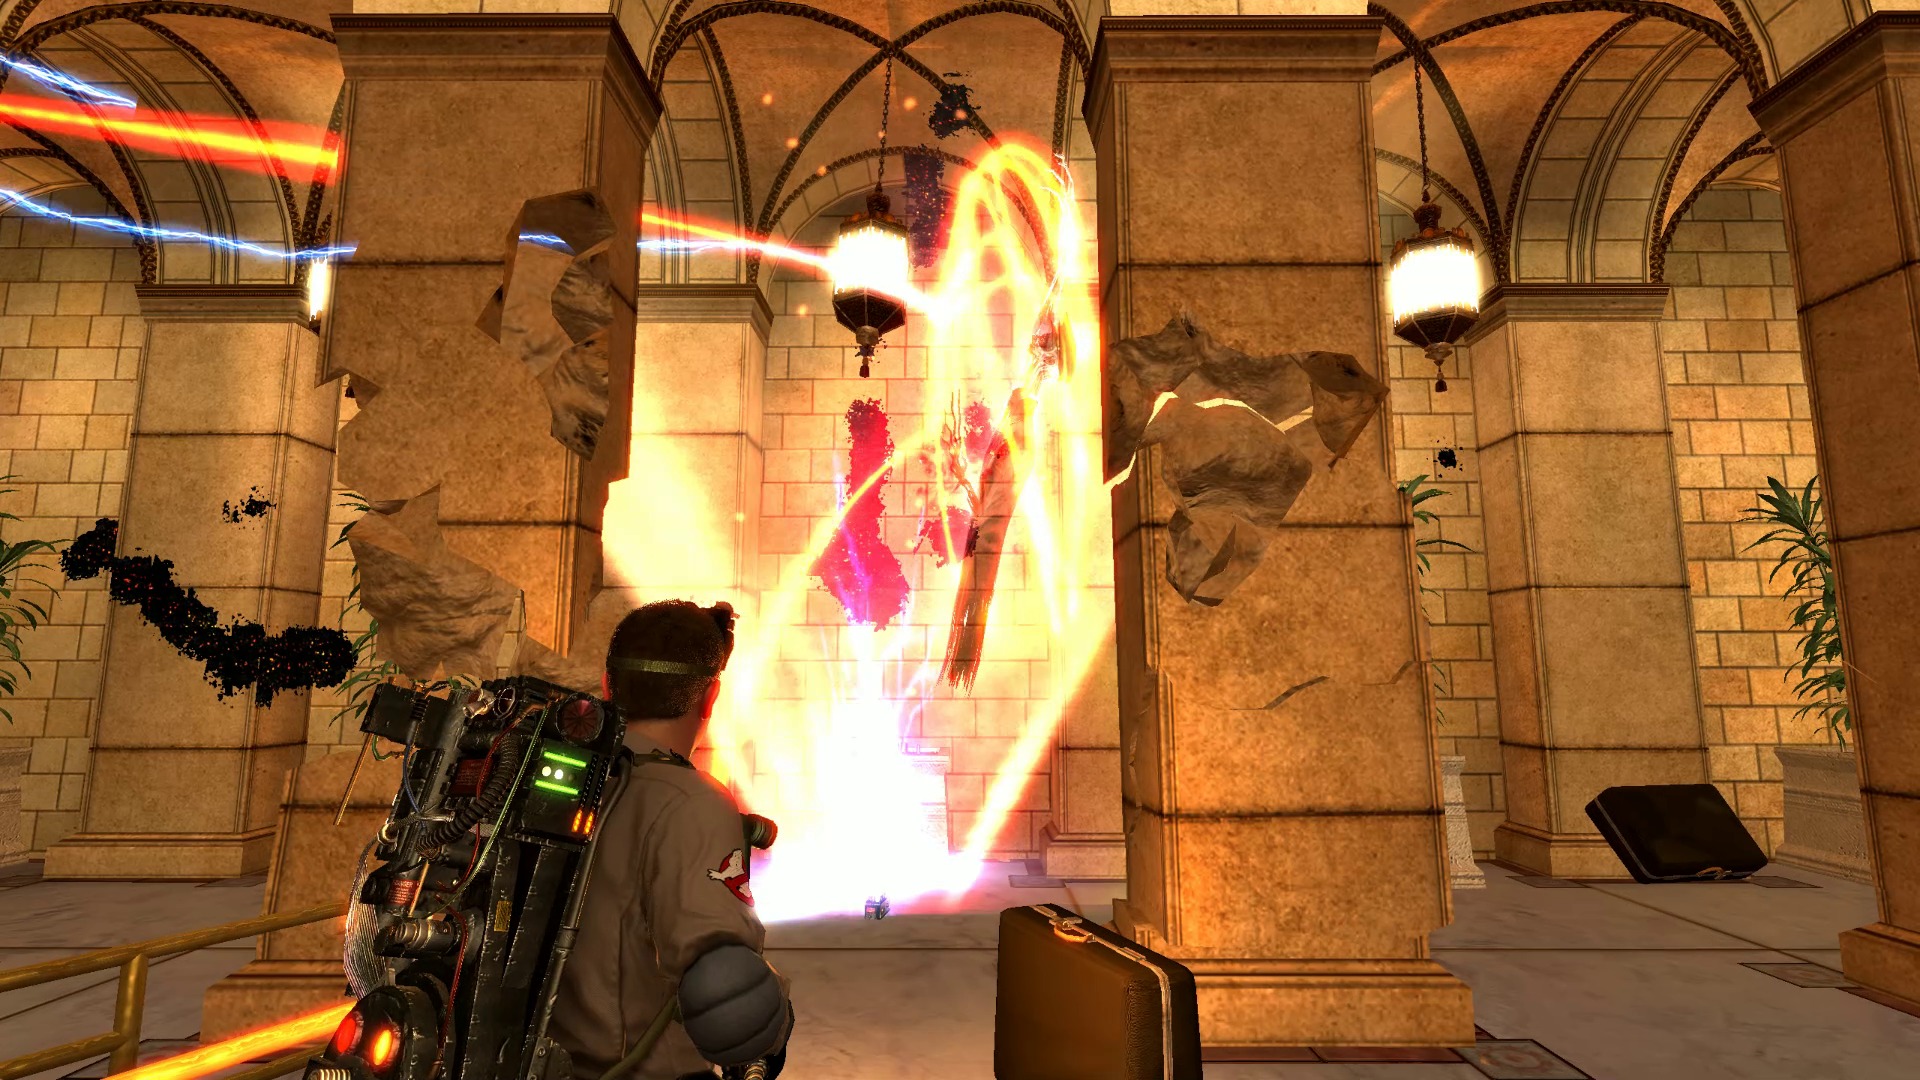 大人気映画をゲーム化した Ghostbusters The Video Game Remastered 発売決定 ゴーストバスターズ の新人社員としておなじみの仲間とともに幽霊に挑め